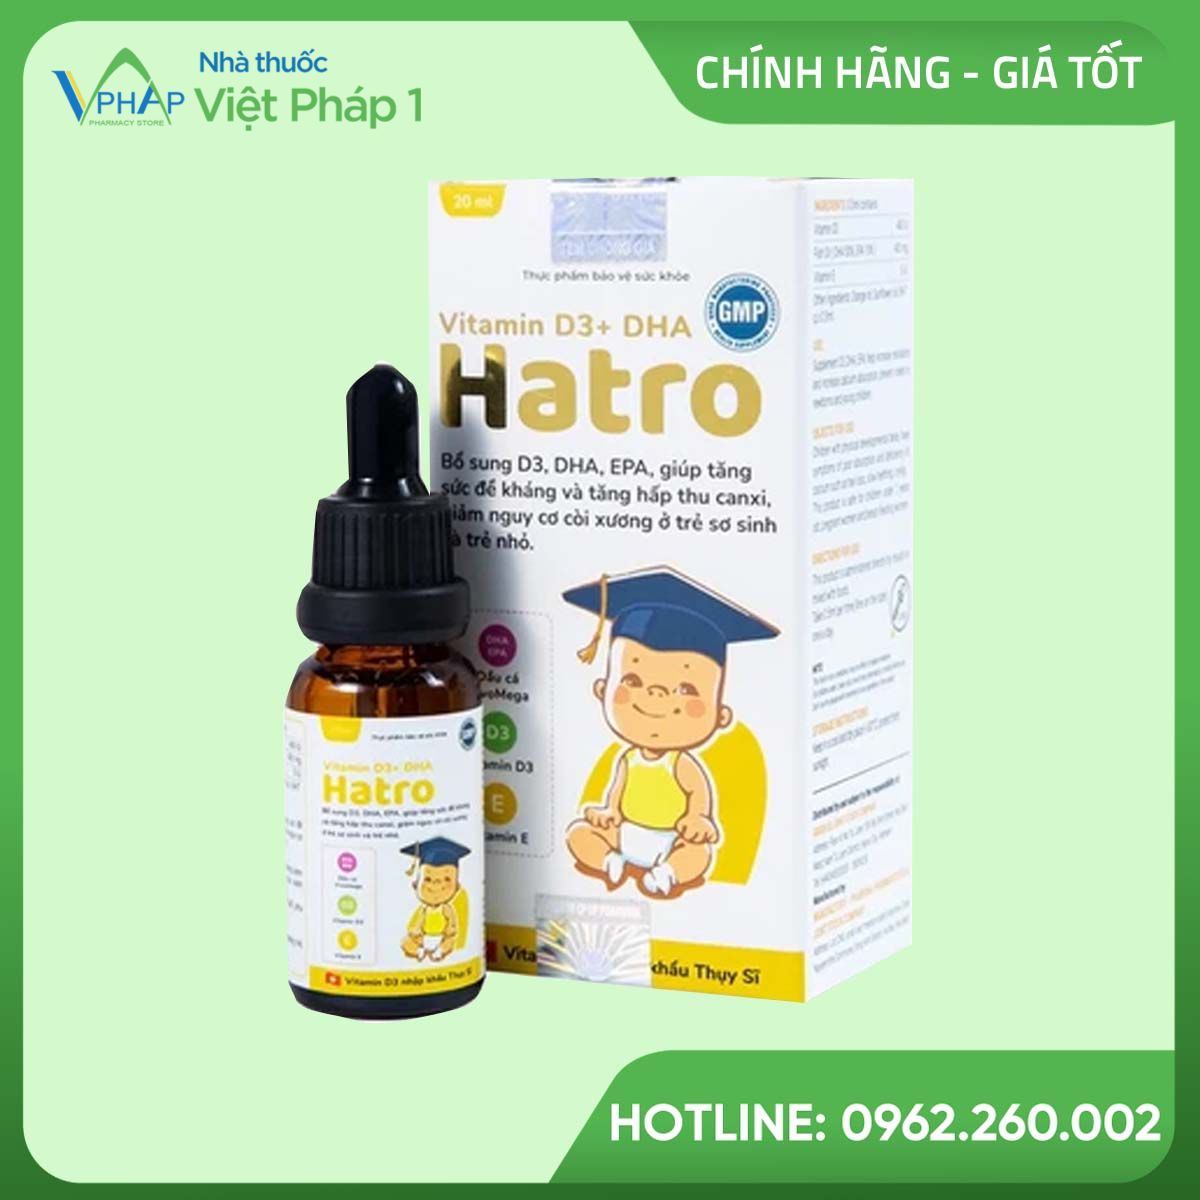 Hình ảnh sản phẩm Vitamin D3 DHA Hatro